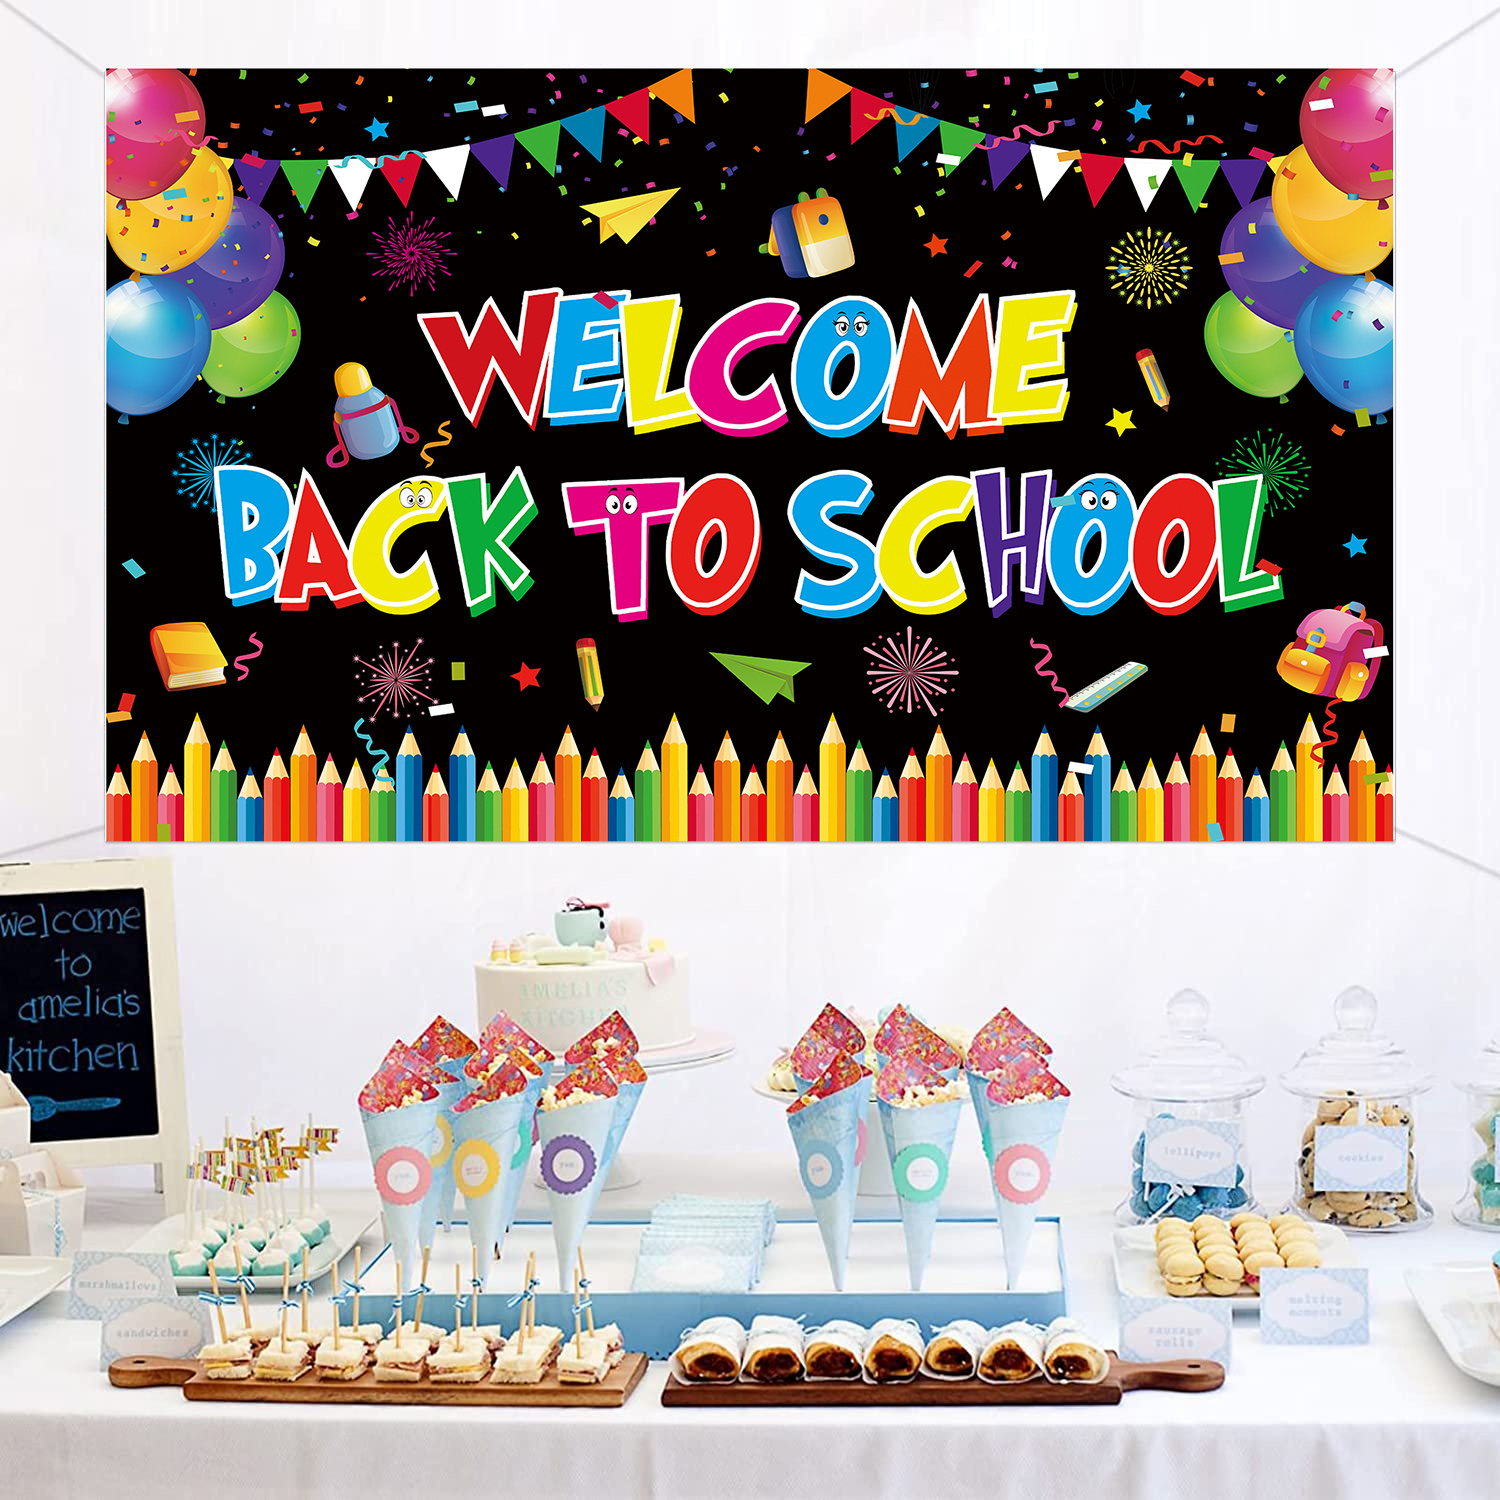 XtraLarge - Pancarta de bienvenida de vuelta a la escuela, 72 x 44  pulgadas, decoración de bienvenida de vuelta a la escuela para el hogar,  pancarta